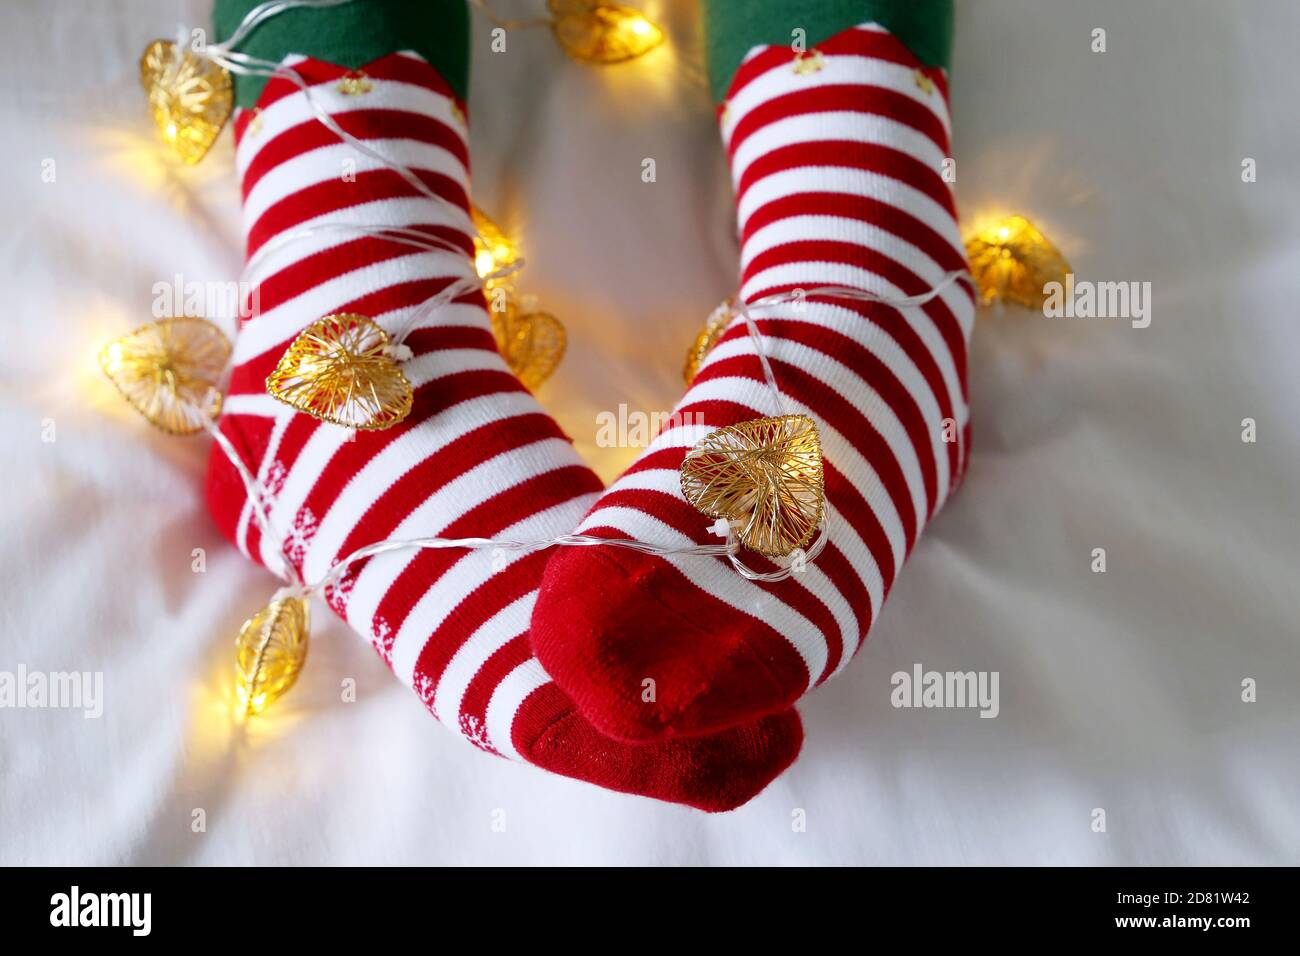 Weibliche Beine in Weihnachtssocken mit Girlande und festlichen Lichtern in Herzform. Konzept der romantischen Silvester Nacht, Elf Kostüm Stockfoto